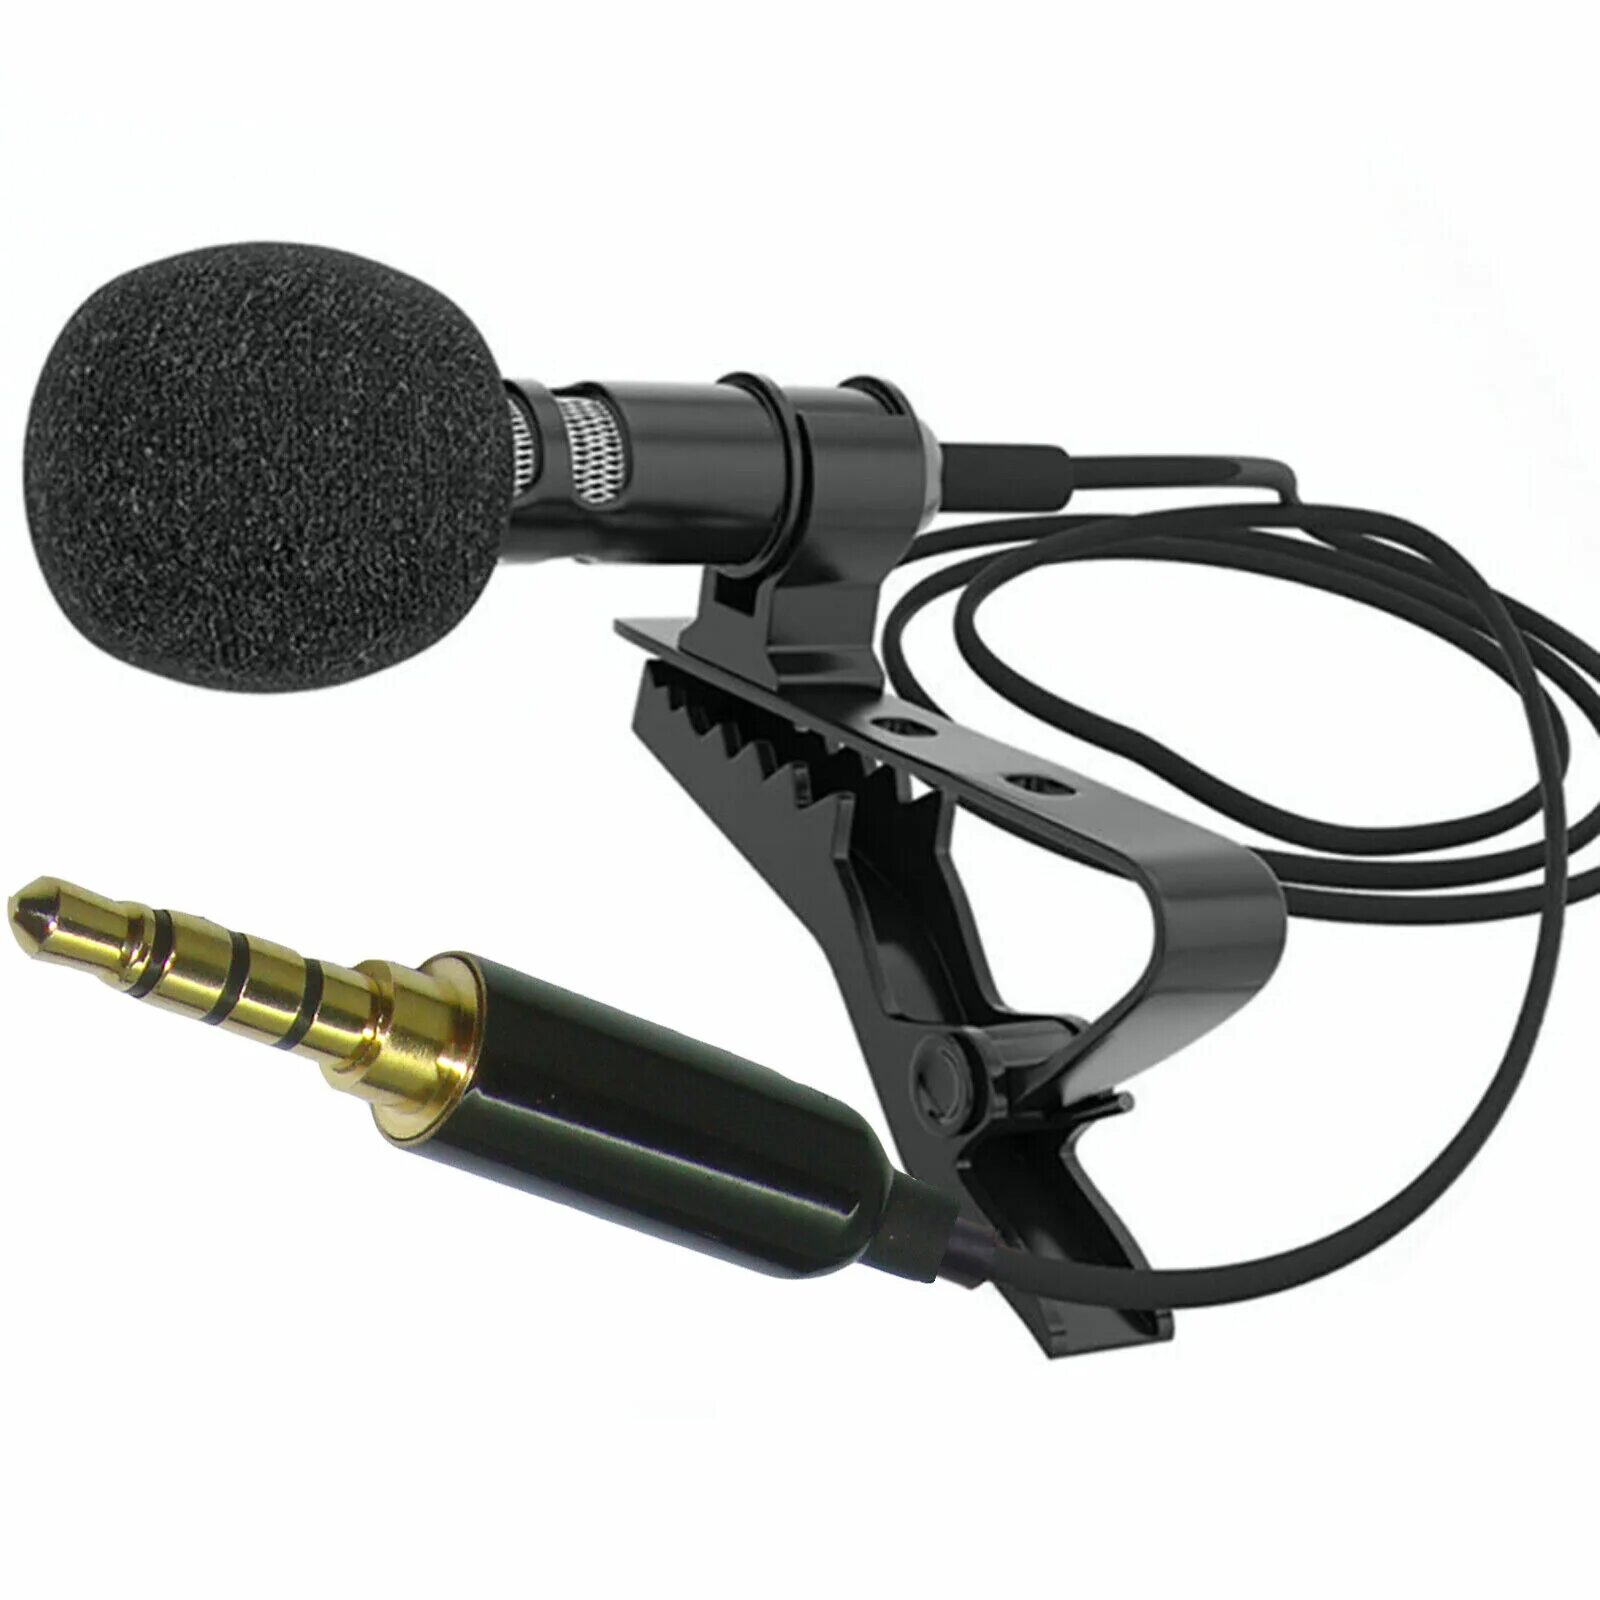 Петличный микрофон gl119. Микрофон gl-119. Lavalier Microphone gl-119 3.5 mm. Микрофон петличный Lavalier. Микрофон 3.5 купить